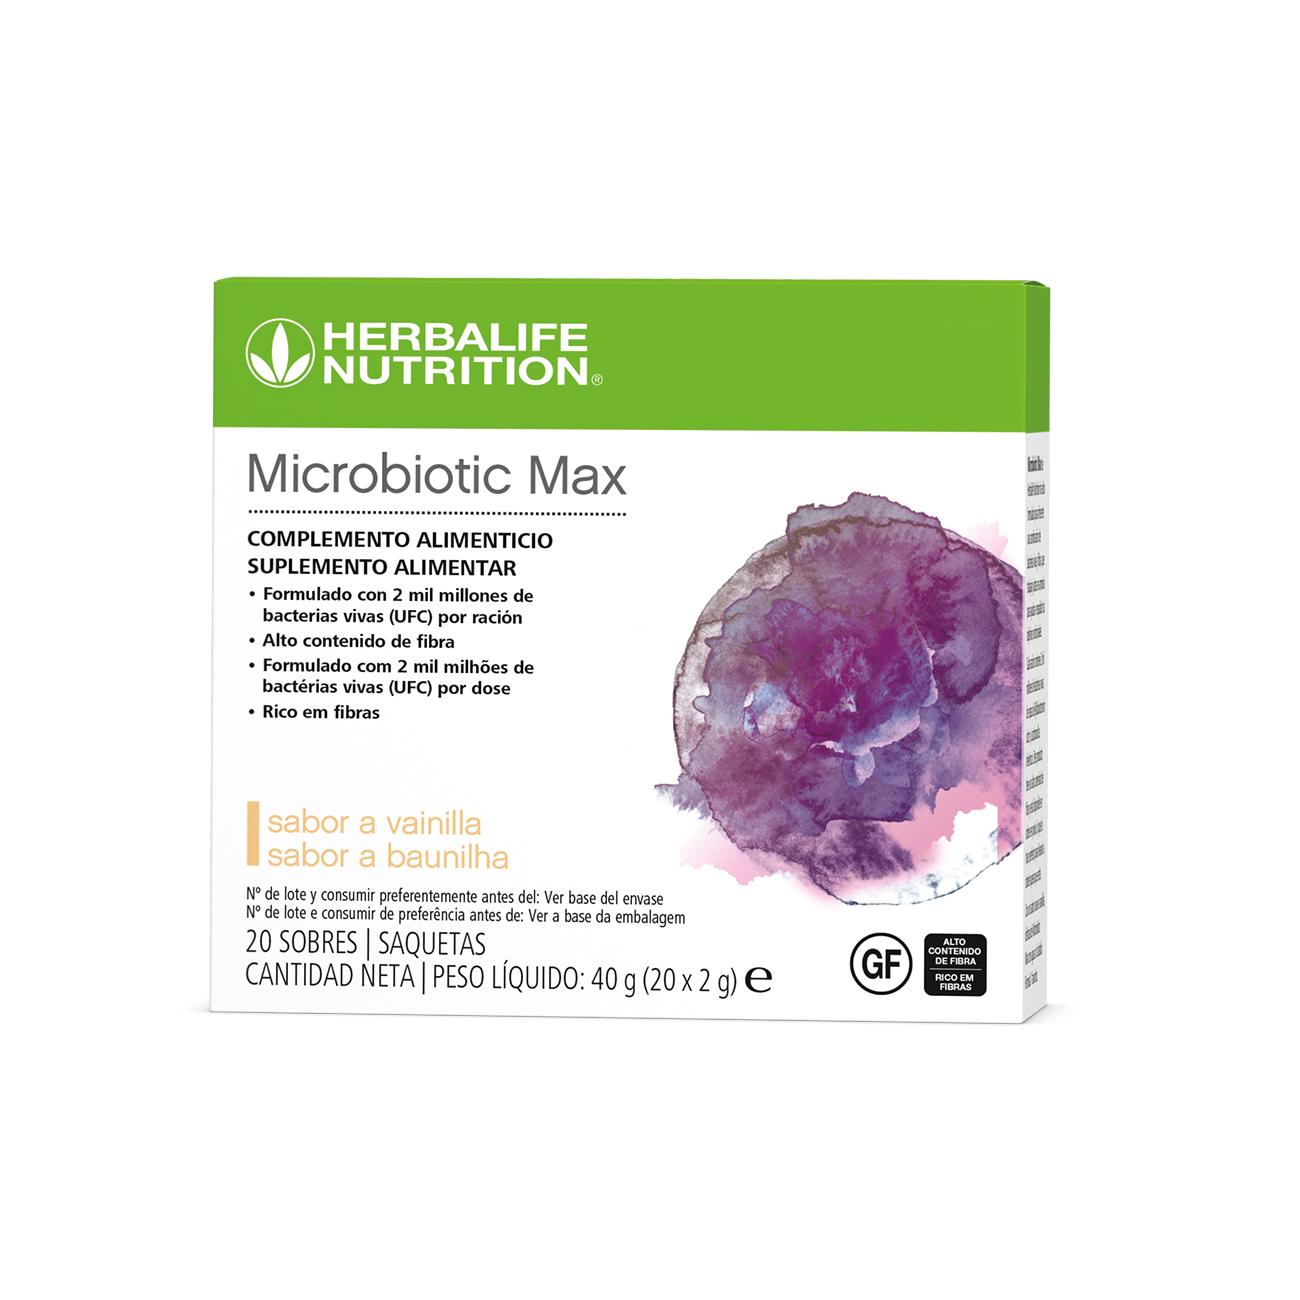 Microbiotic Max, suplemento alimentar formulado com uma combinação de probióticos e fibras prébióticas.